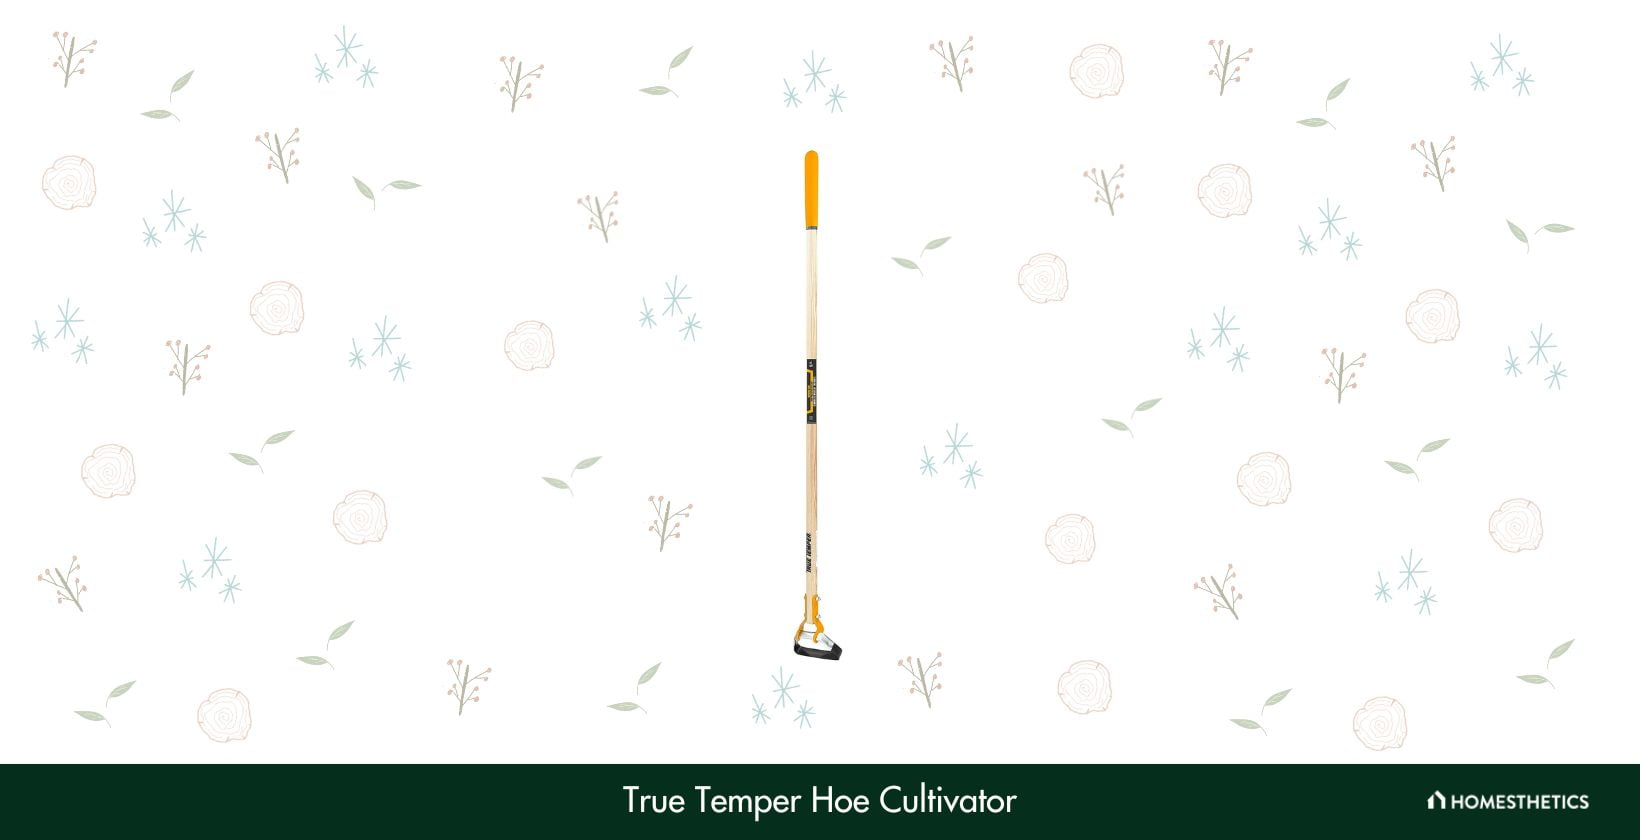 True Temper Hoe Cultivator